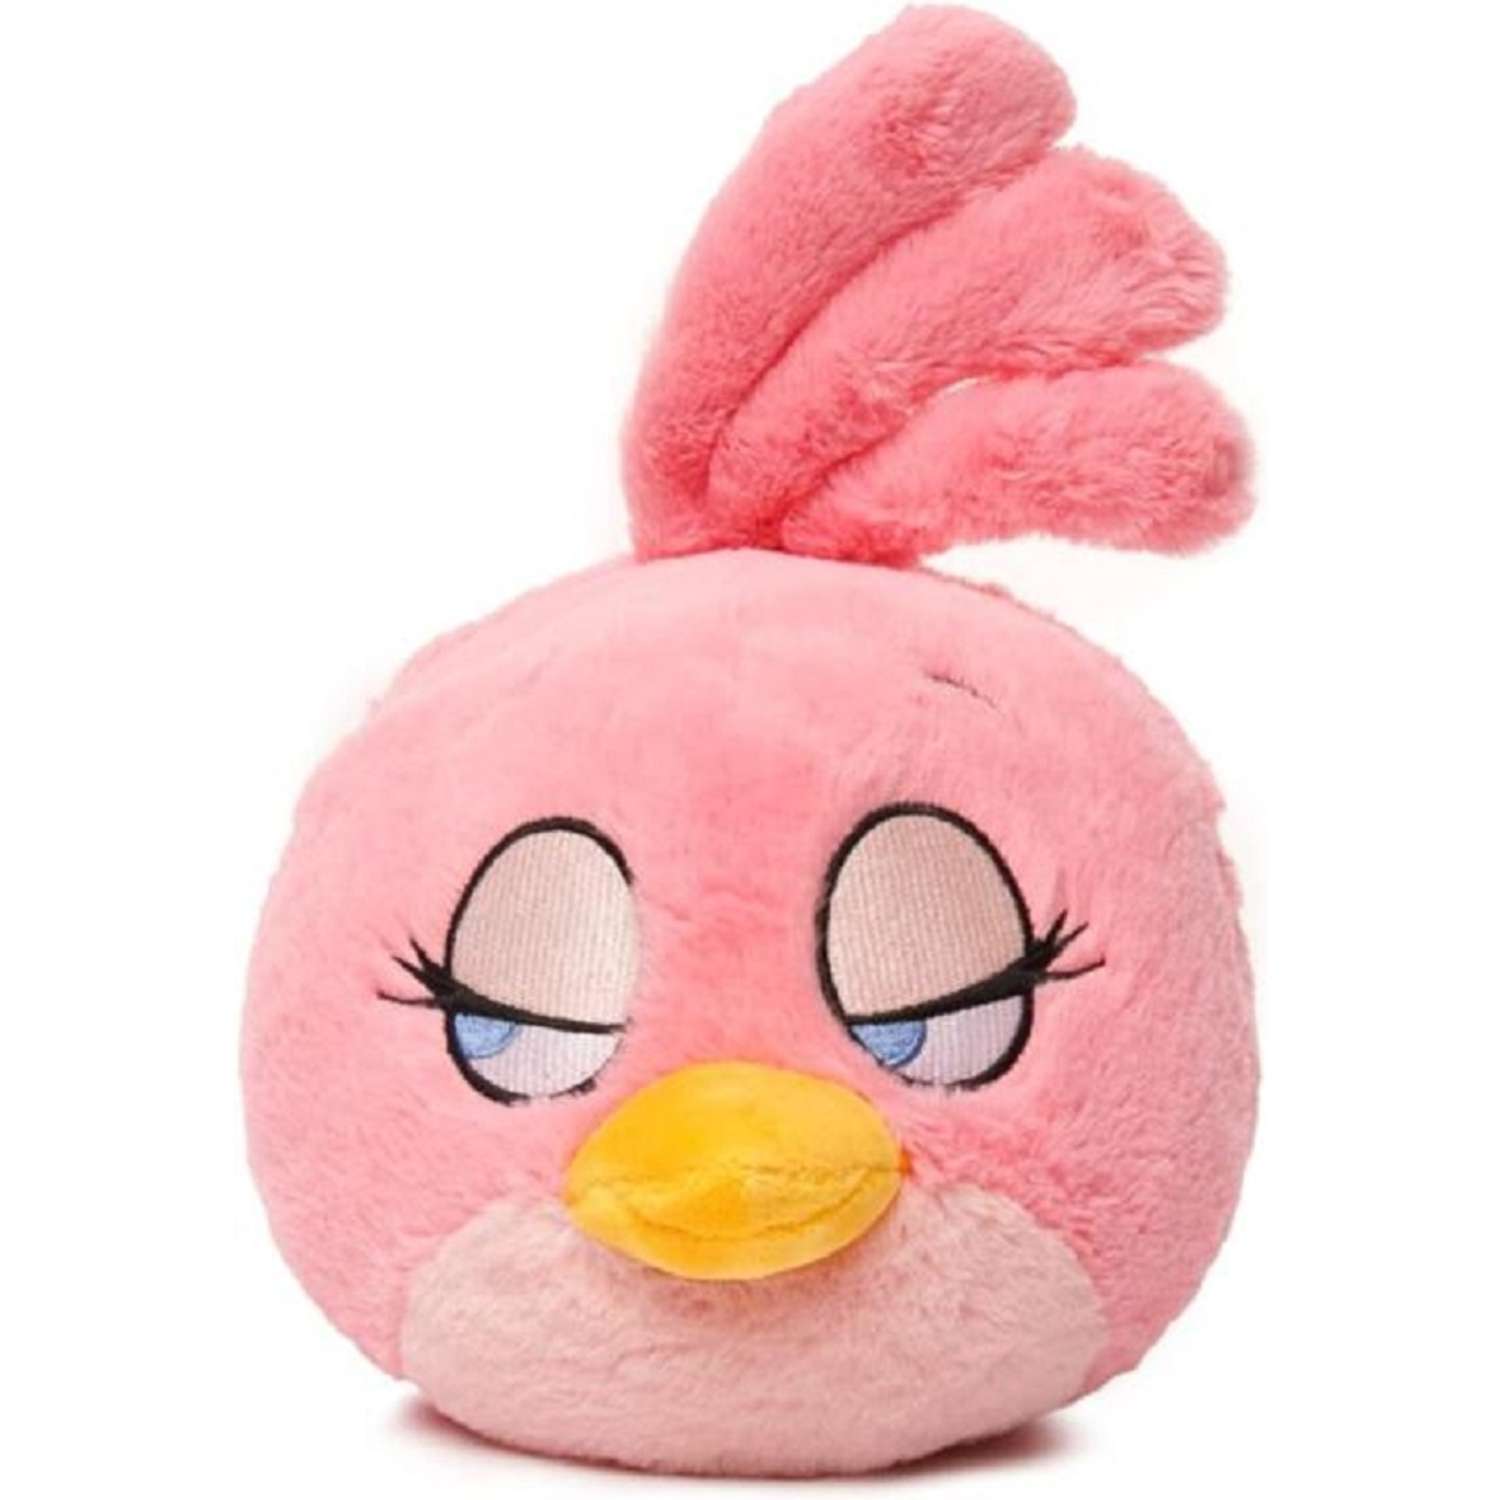 Мягкая игрушка CASTLELADY ANGRY BIRDS Стелла со звуком розовая 12 см - фото 1